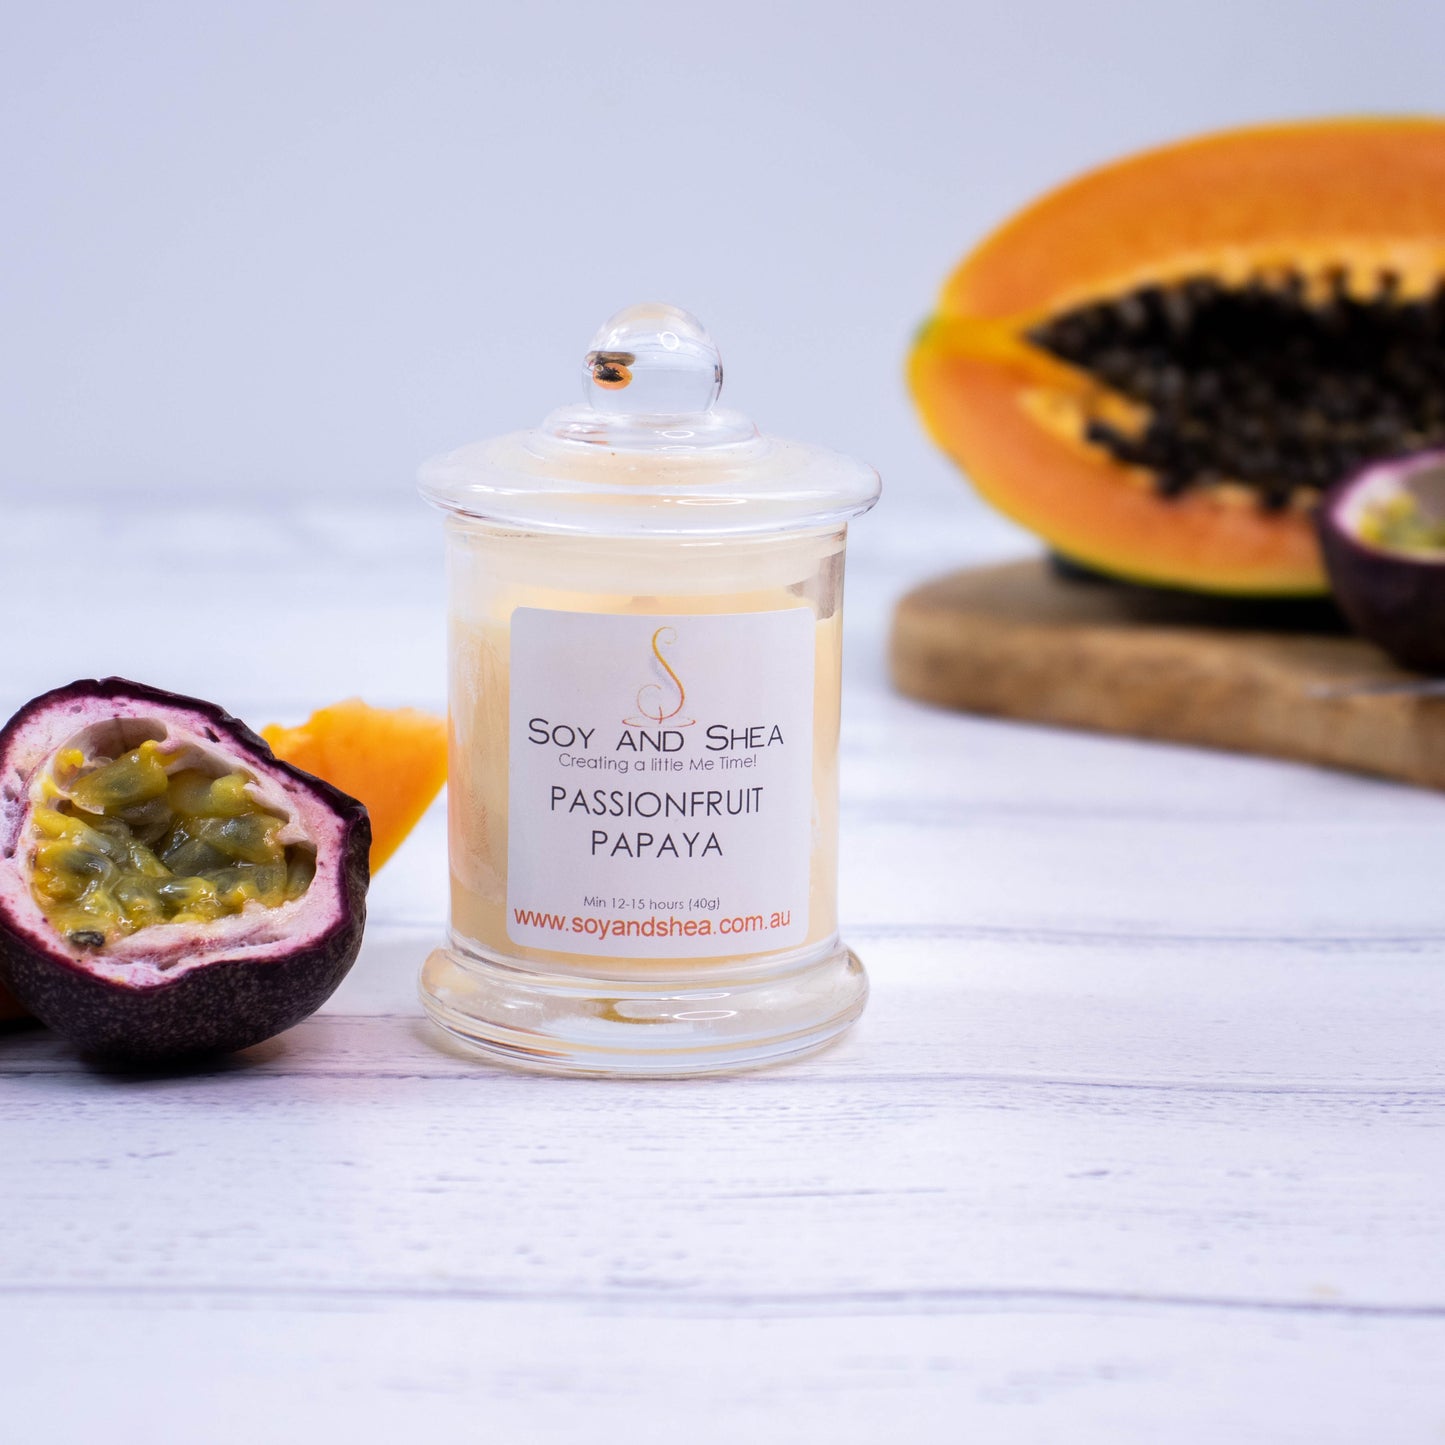 Passionfruit Papaya Soy Candle